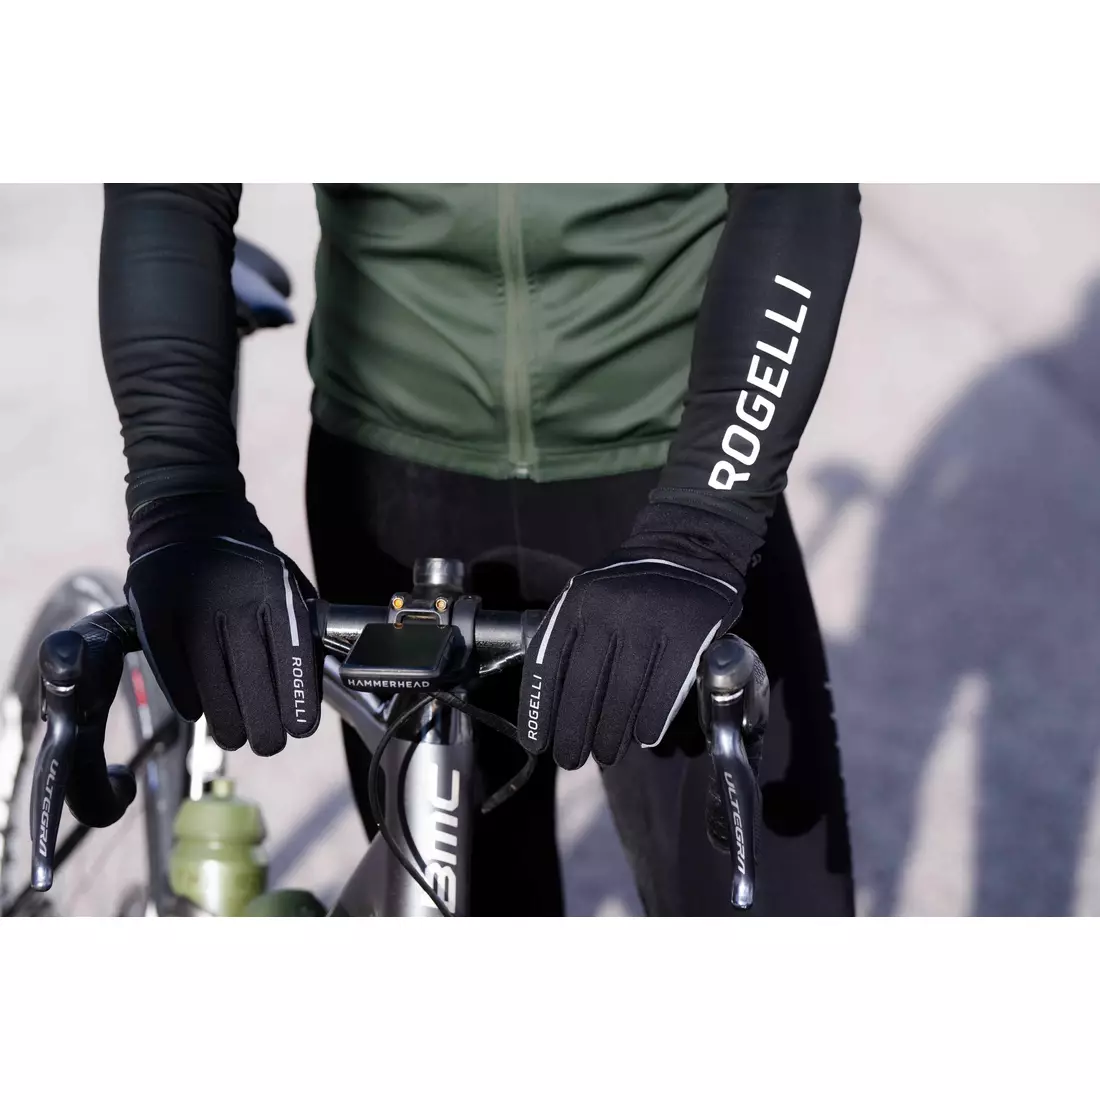 Mănuși de iarnă pentru ciclism Rogelli APEX, negre